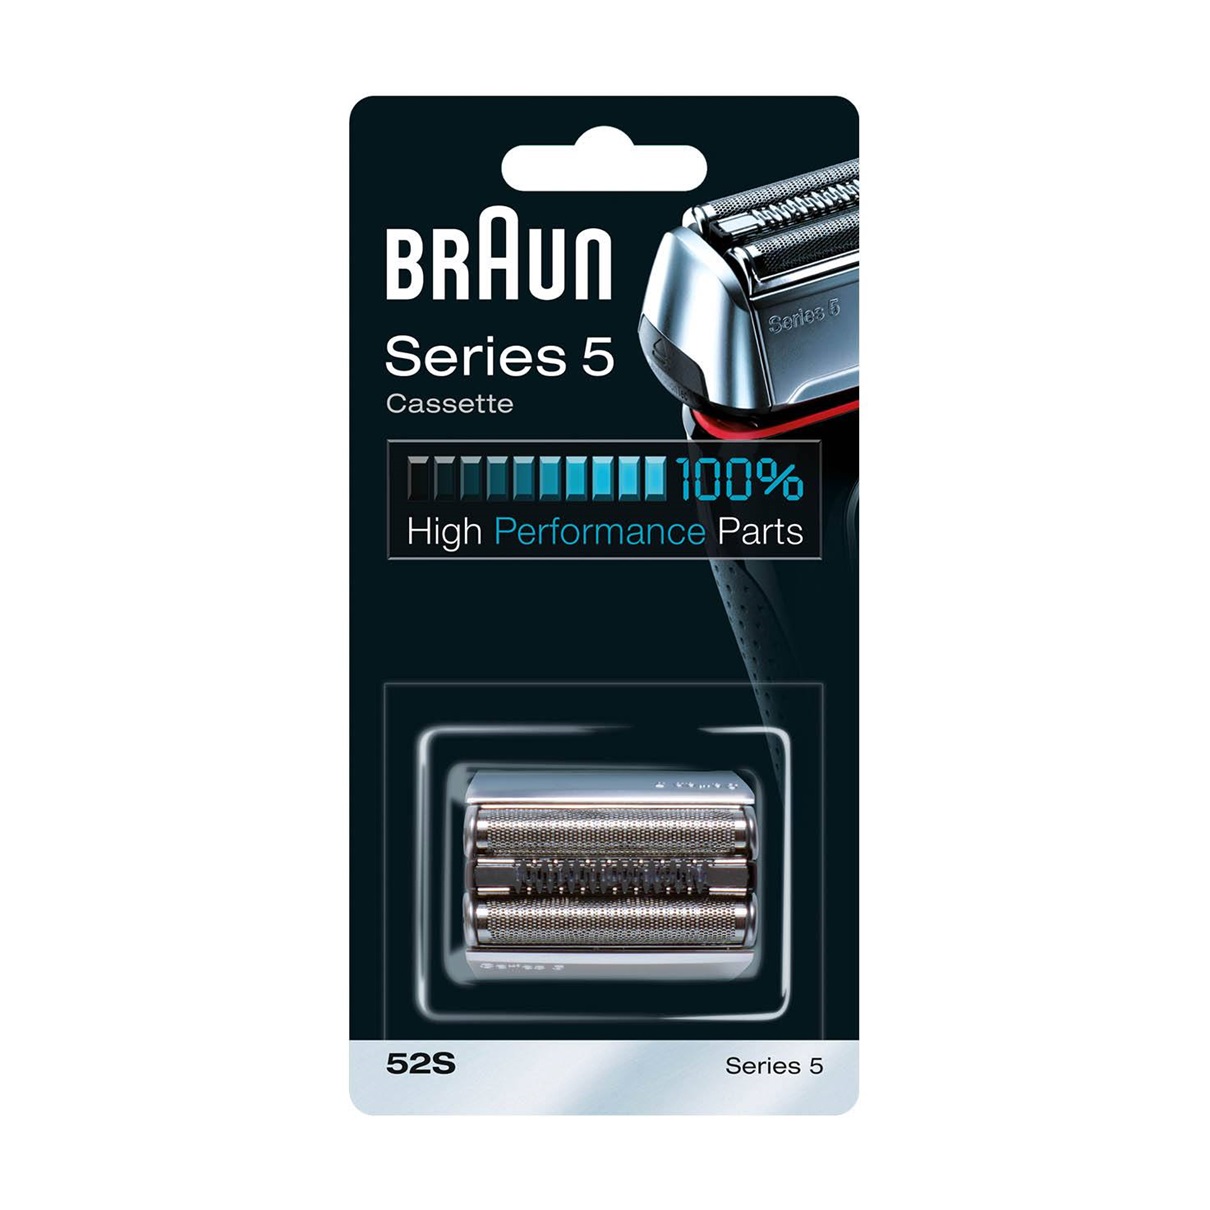 Сетка и режущий блок для бритв Braun 52S 10x628 бритвы замена лезвия бритвы фольга для зубных щеток braun серии 3000 3310 3315 3600 3610 3612 3614 3732 5629 3774 5632 для бритья сетка с сеткой